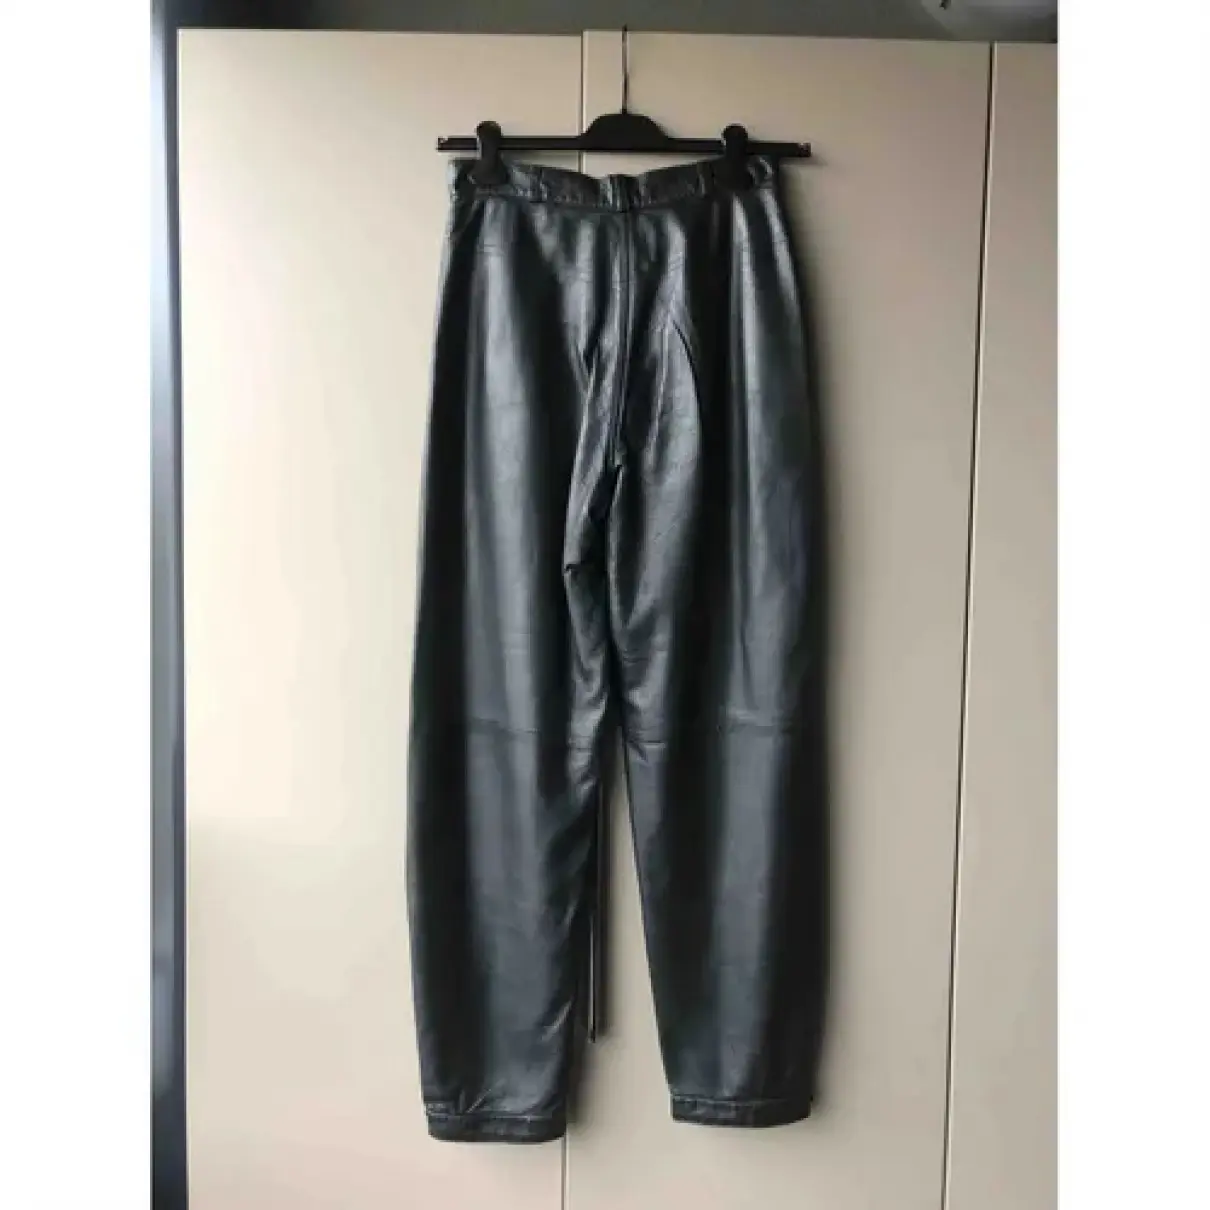 Buy JC De Castelbajac Leather trousers online